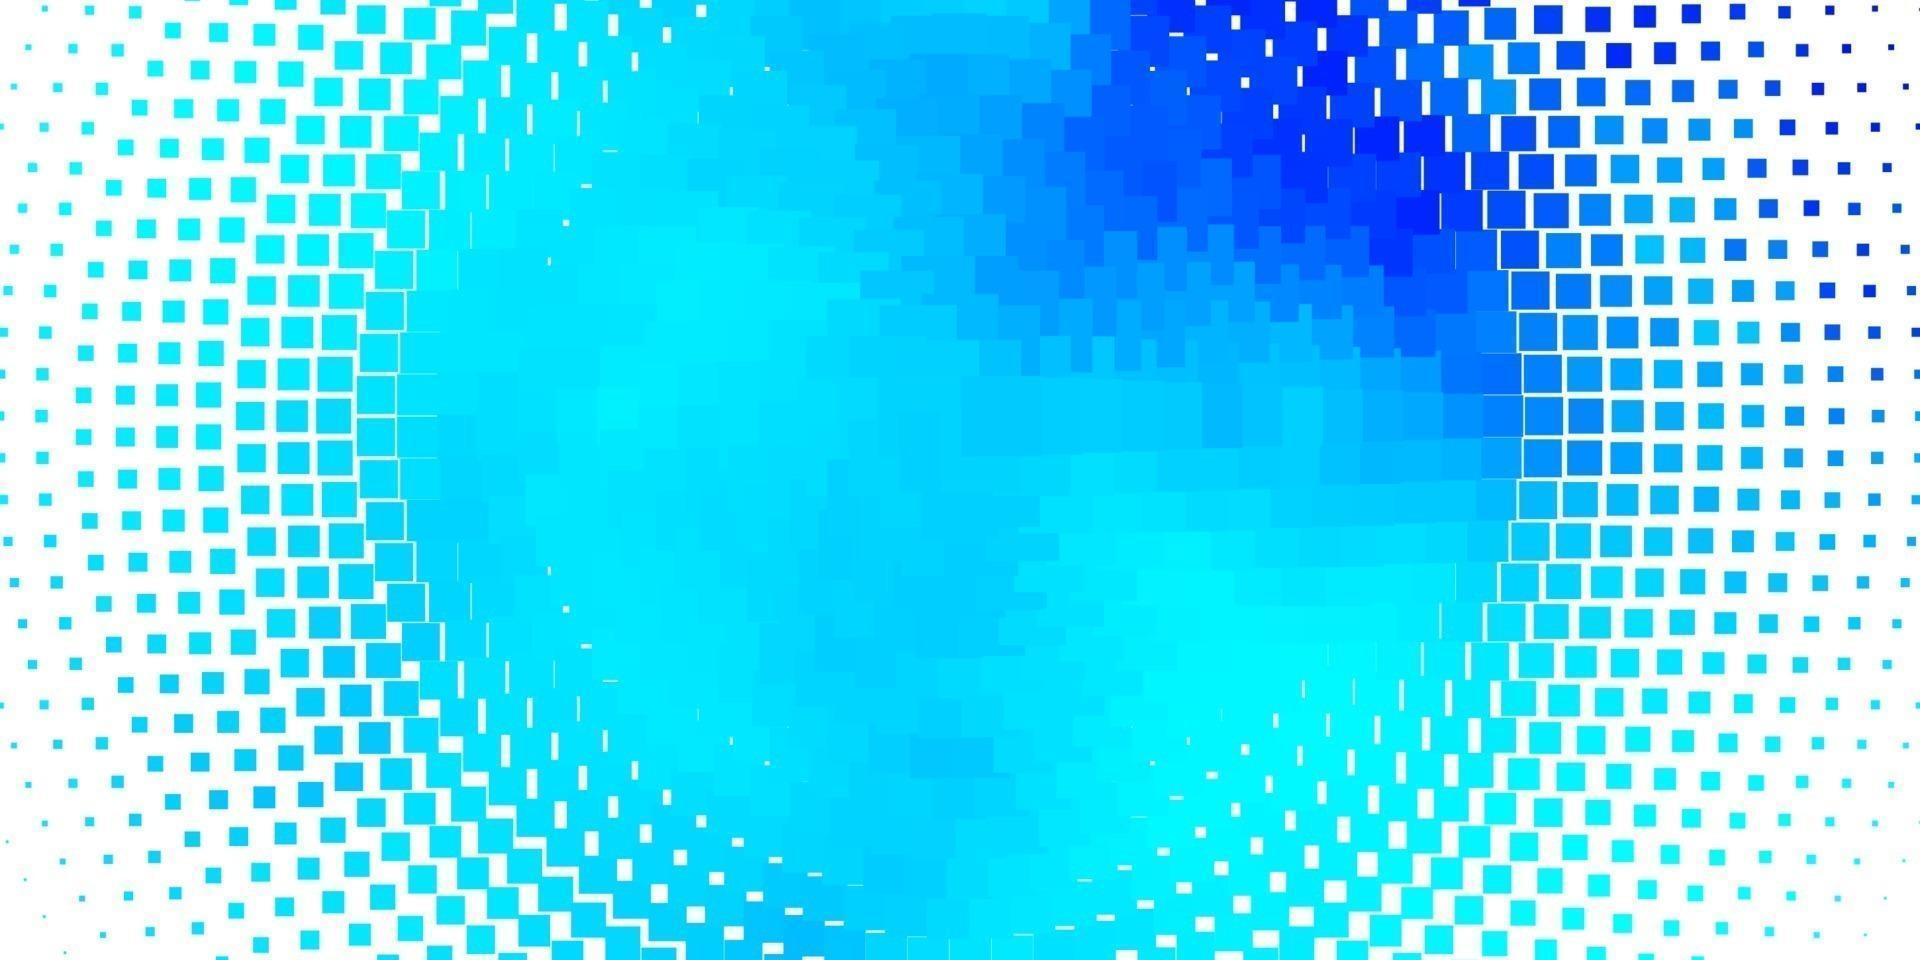 hellrosa, blaue Vektorbeschaffenheit im rechteckigen Stil. vektor